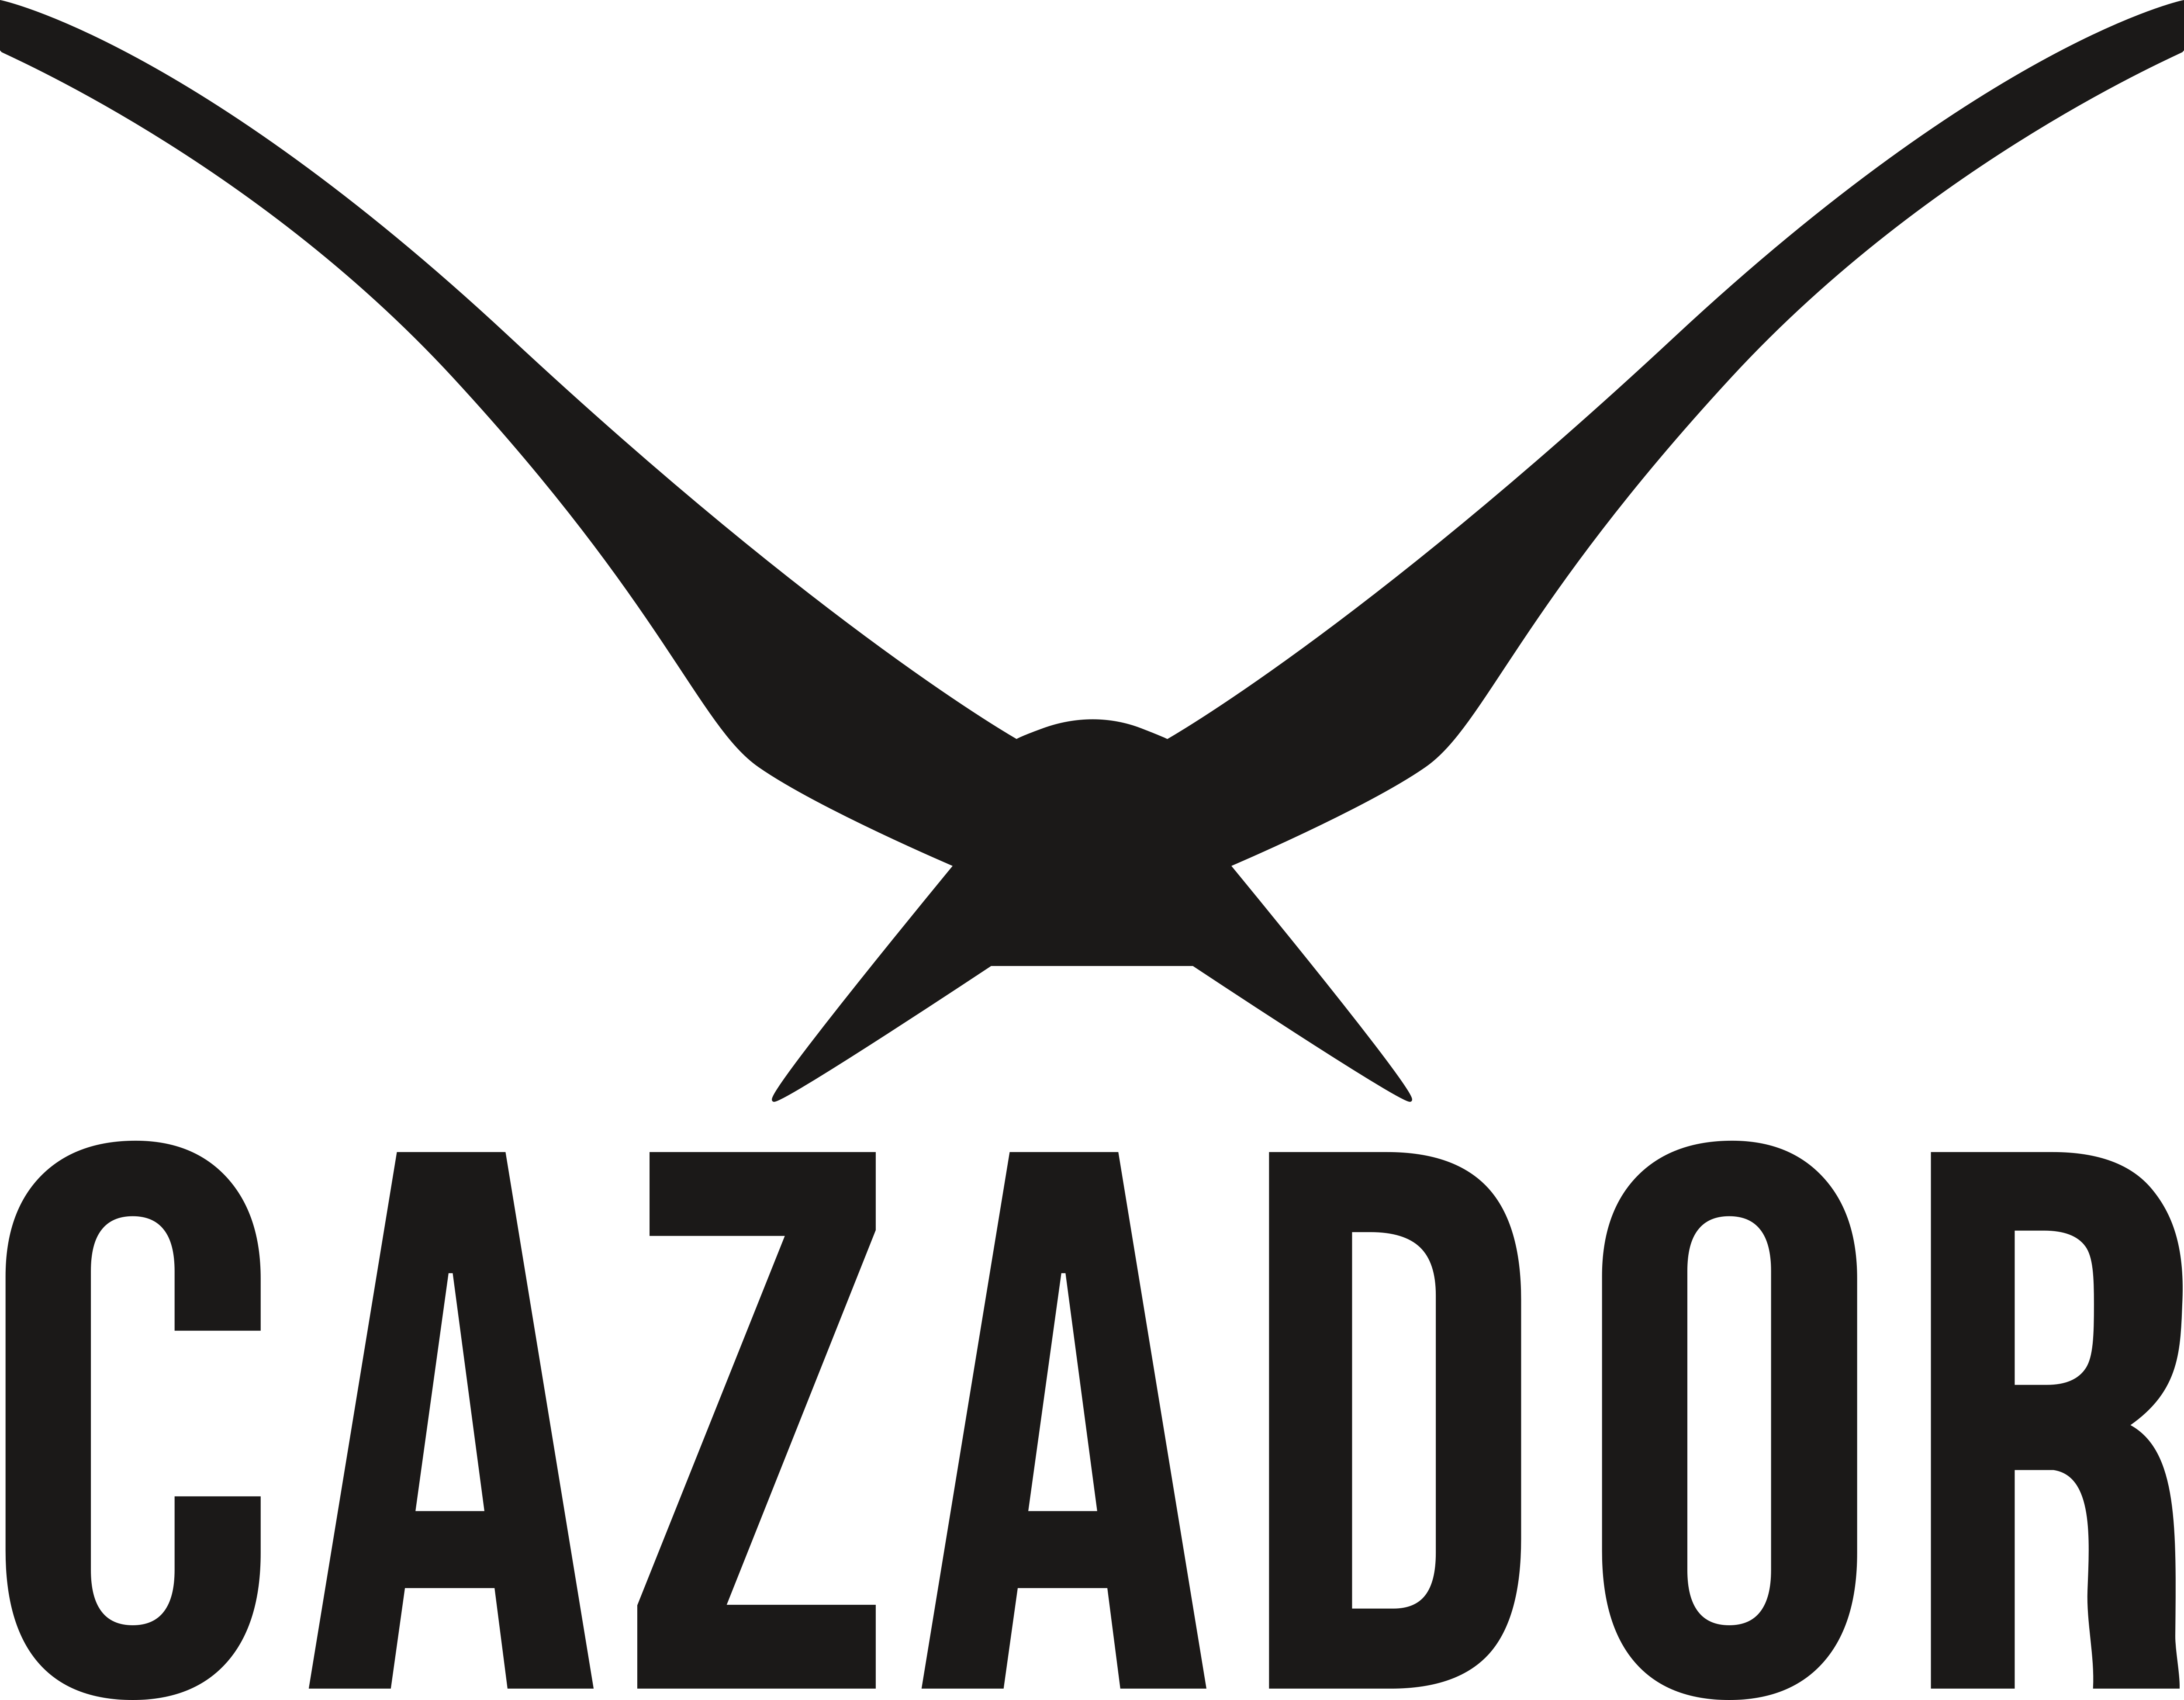 Cazador – Logos Download